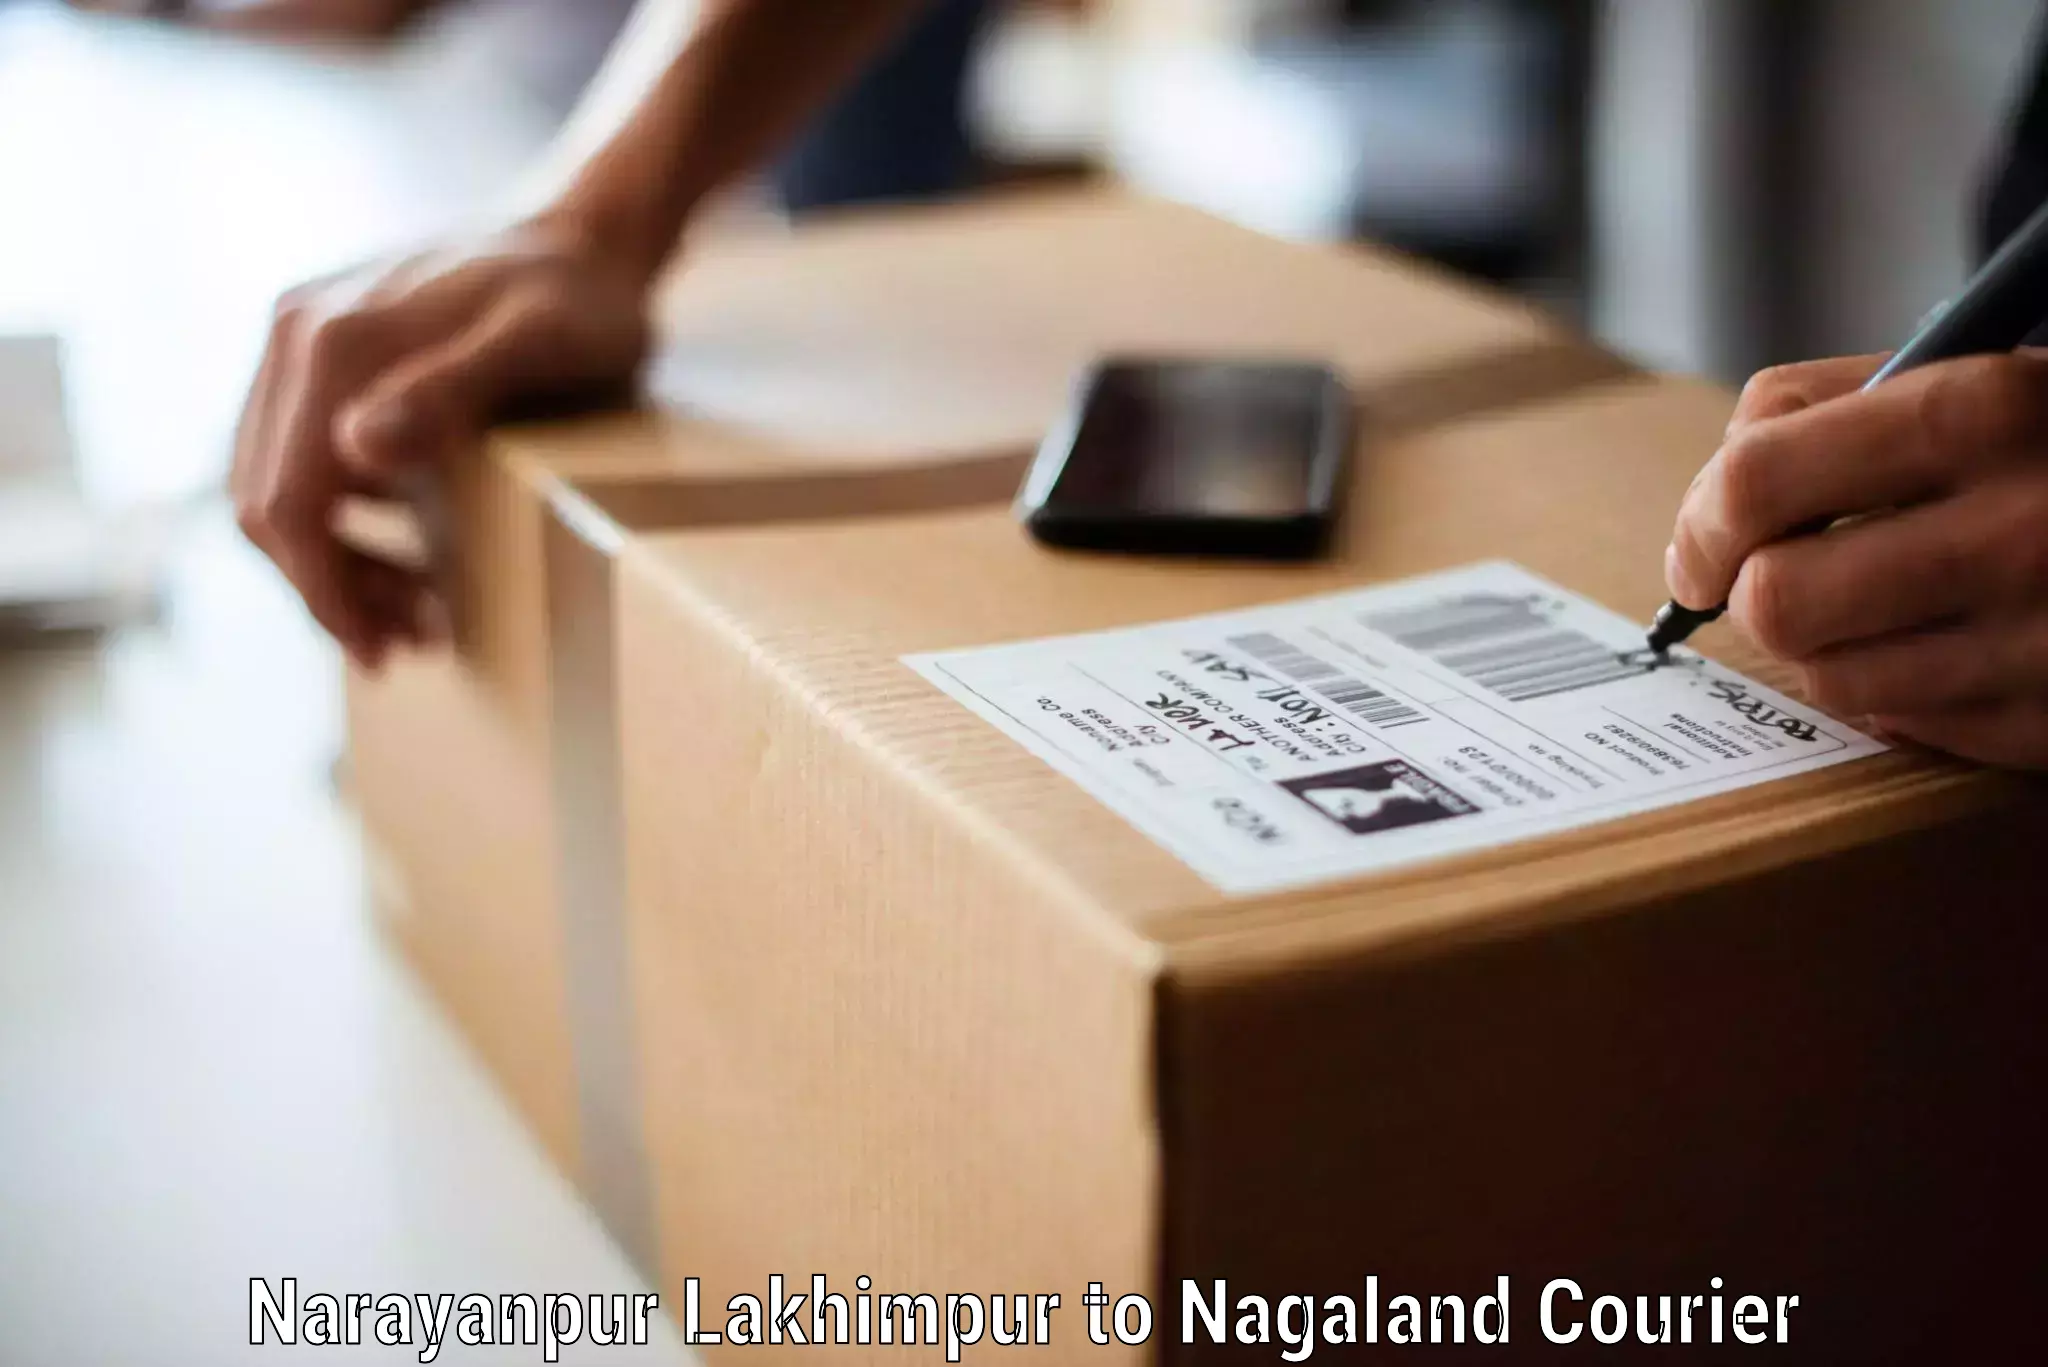 Moving and storage services Narayanpur Lakhimpur to NIT Nagaland